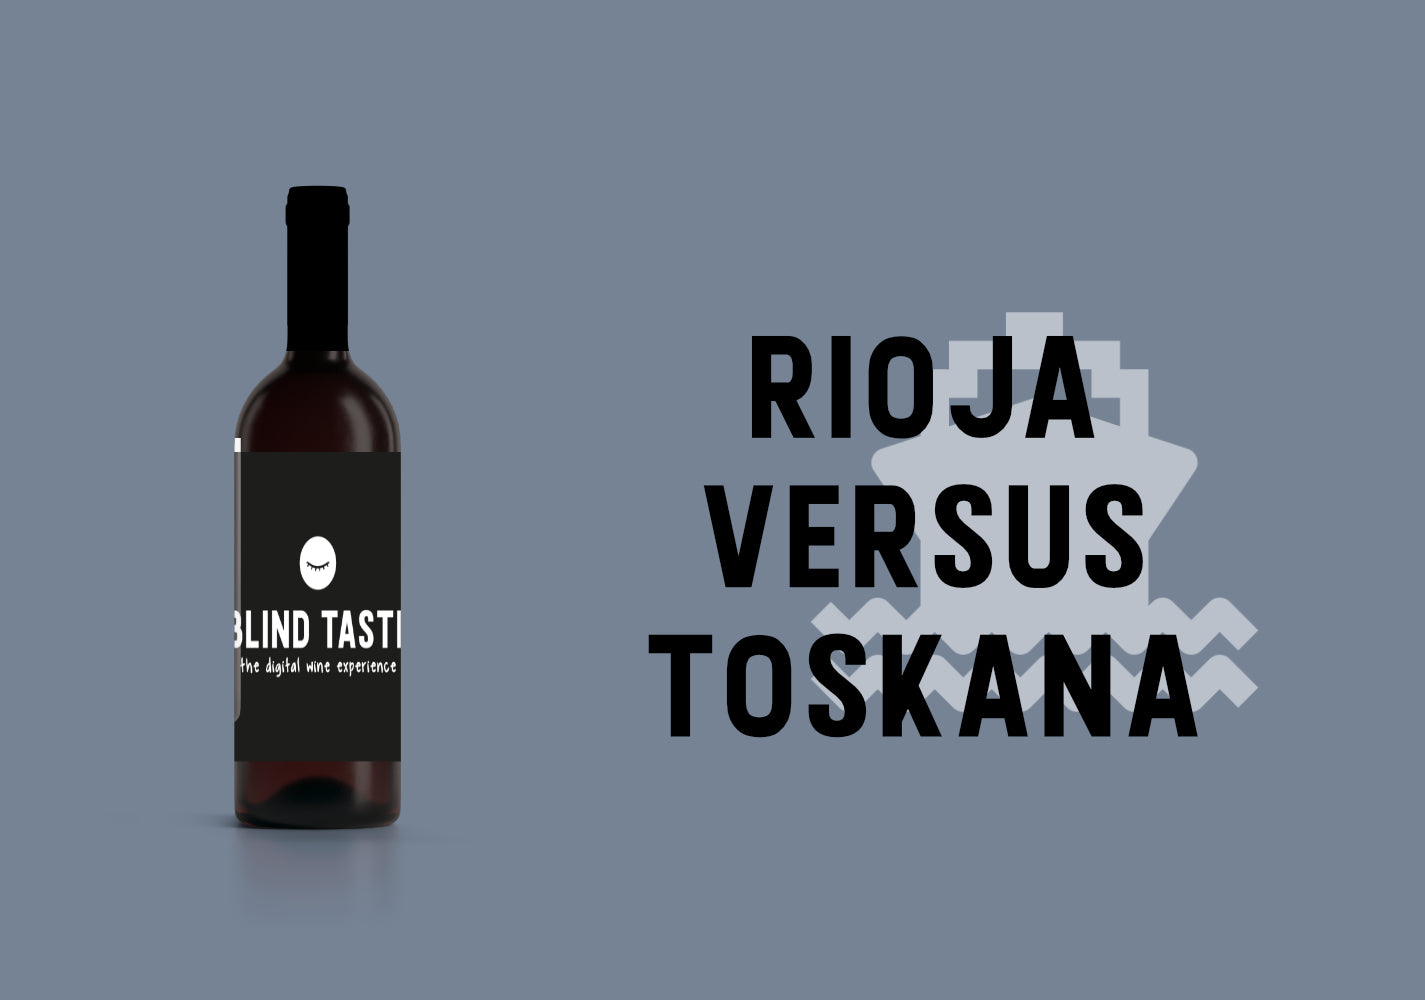 Rioja versus Toskana